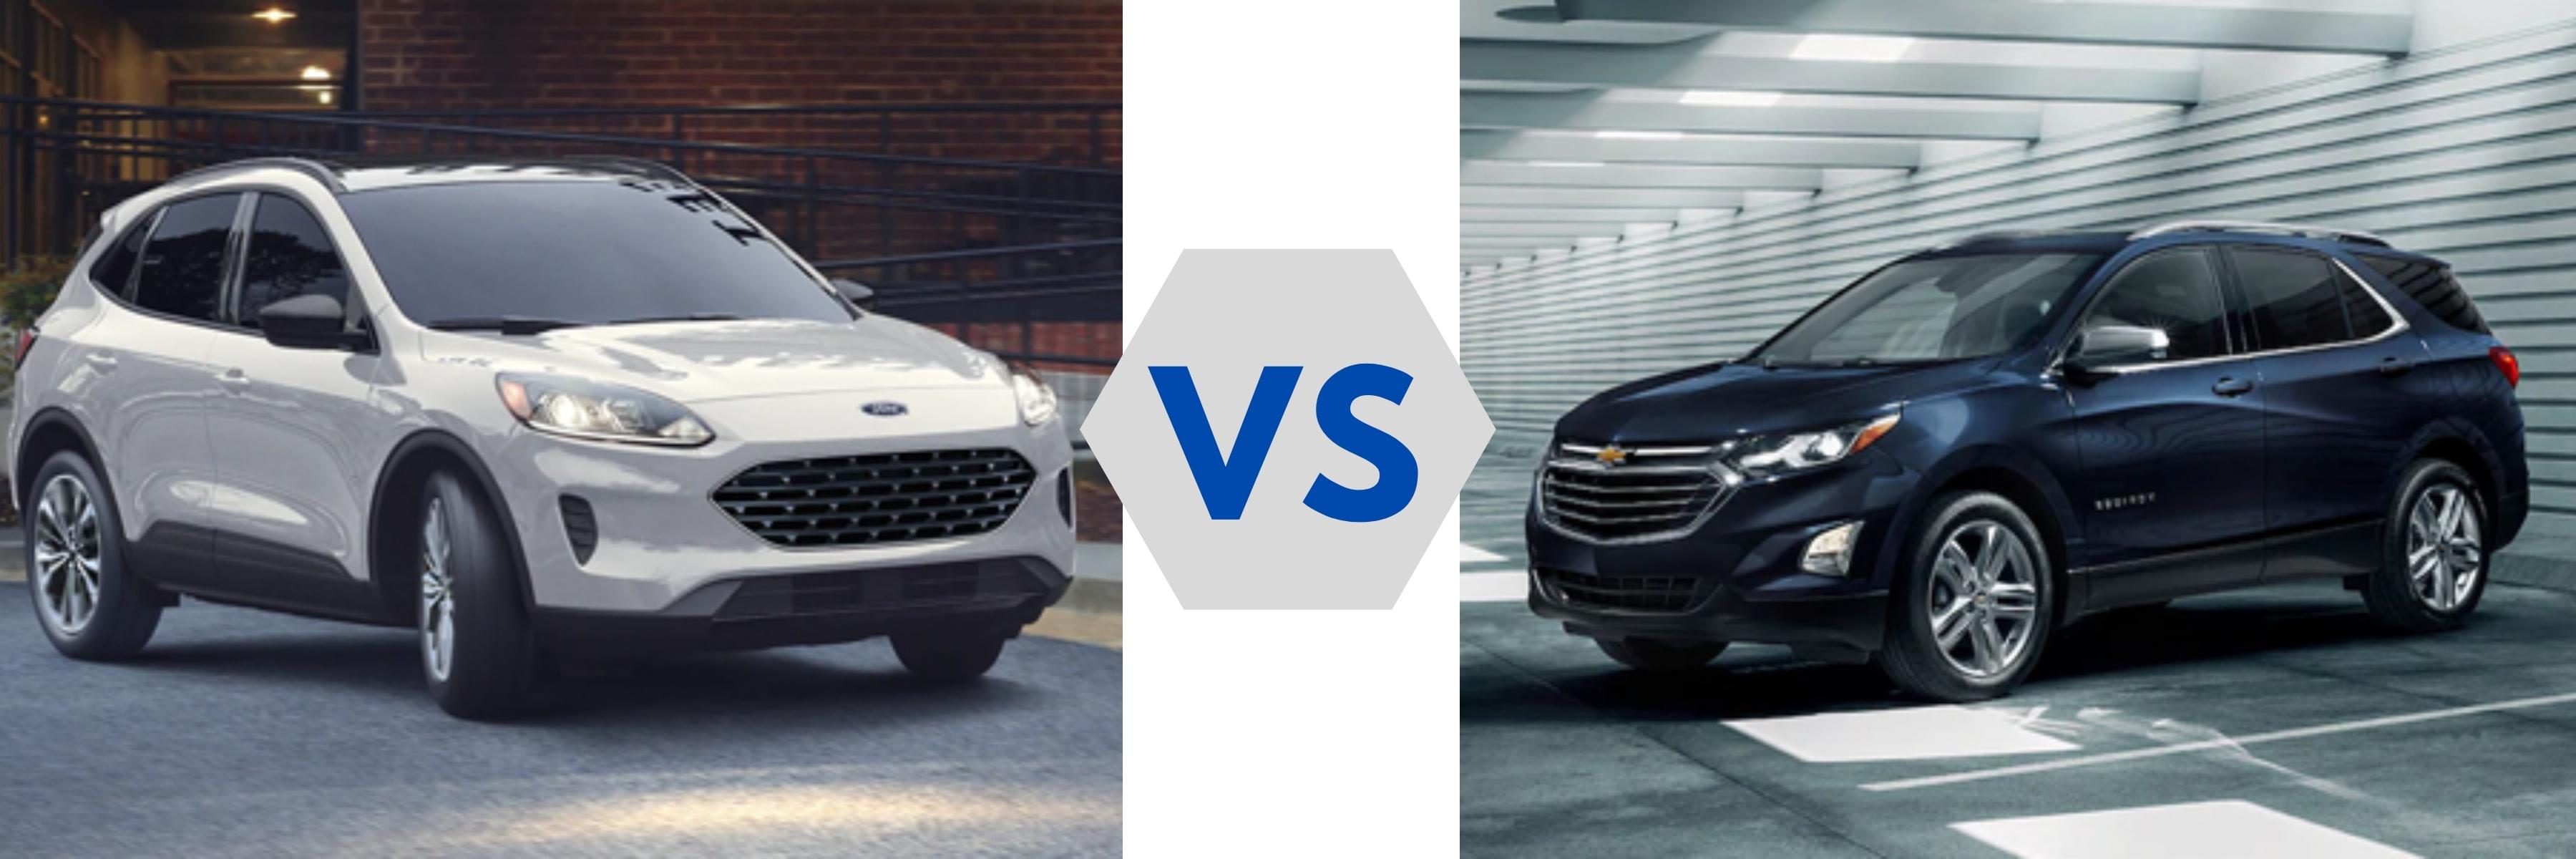 2021 Ford Escape vs Chevy Equinox